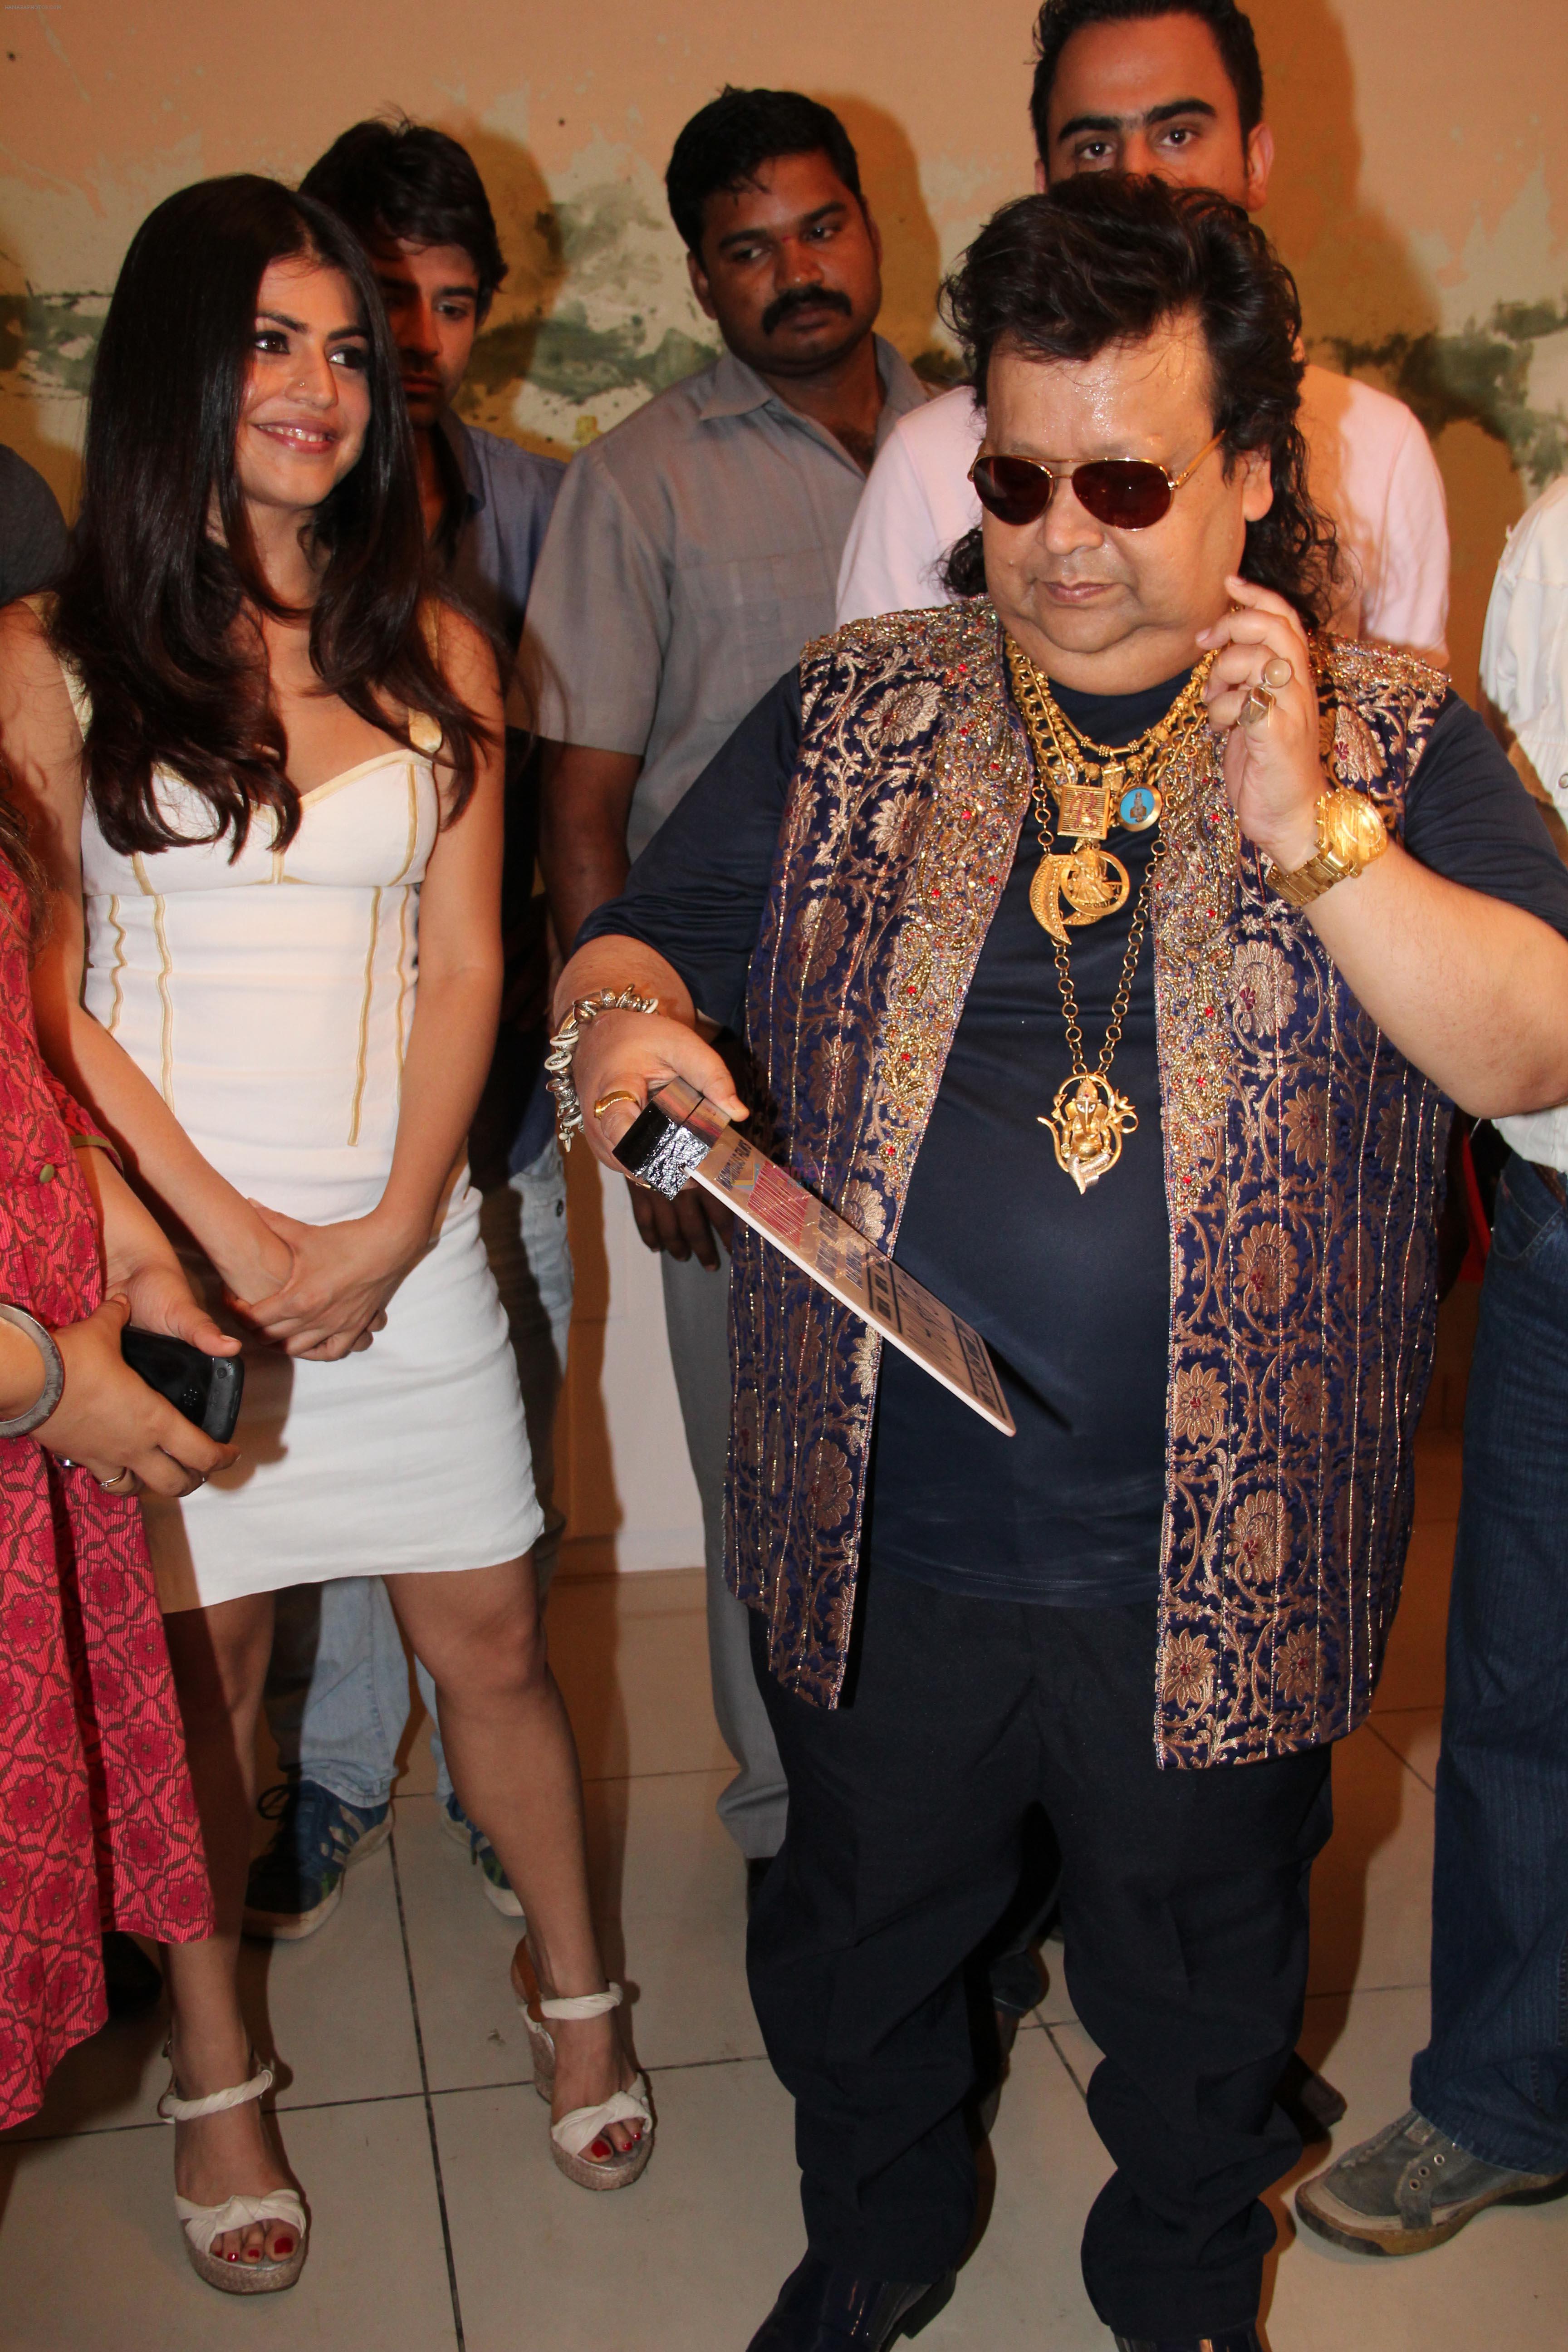 Bappi Lahiri at the Inaugural of Madmidaas Films Main Aur Mr. Riight in Evershine Mall, Malad on 10th May 2012